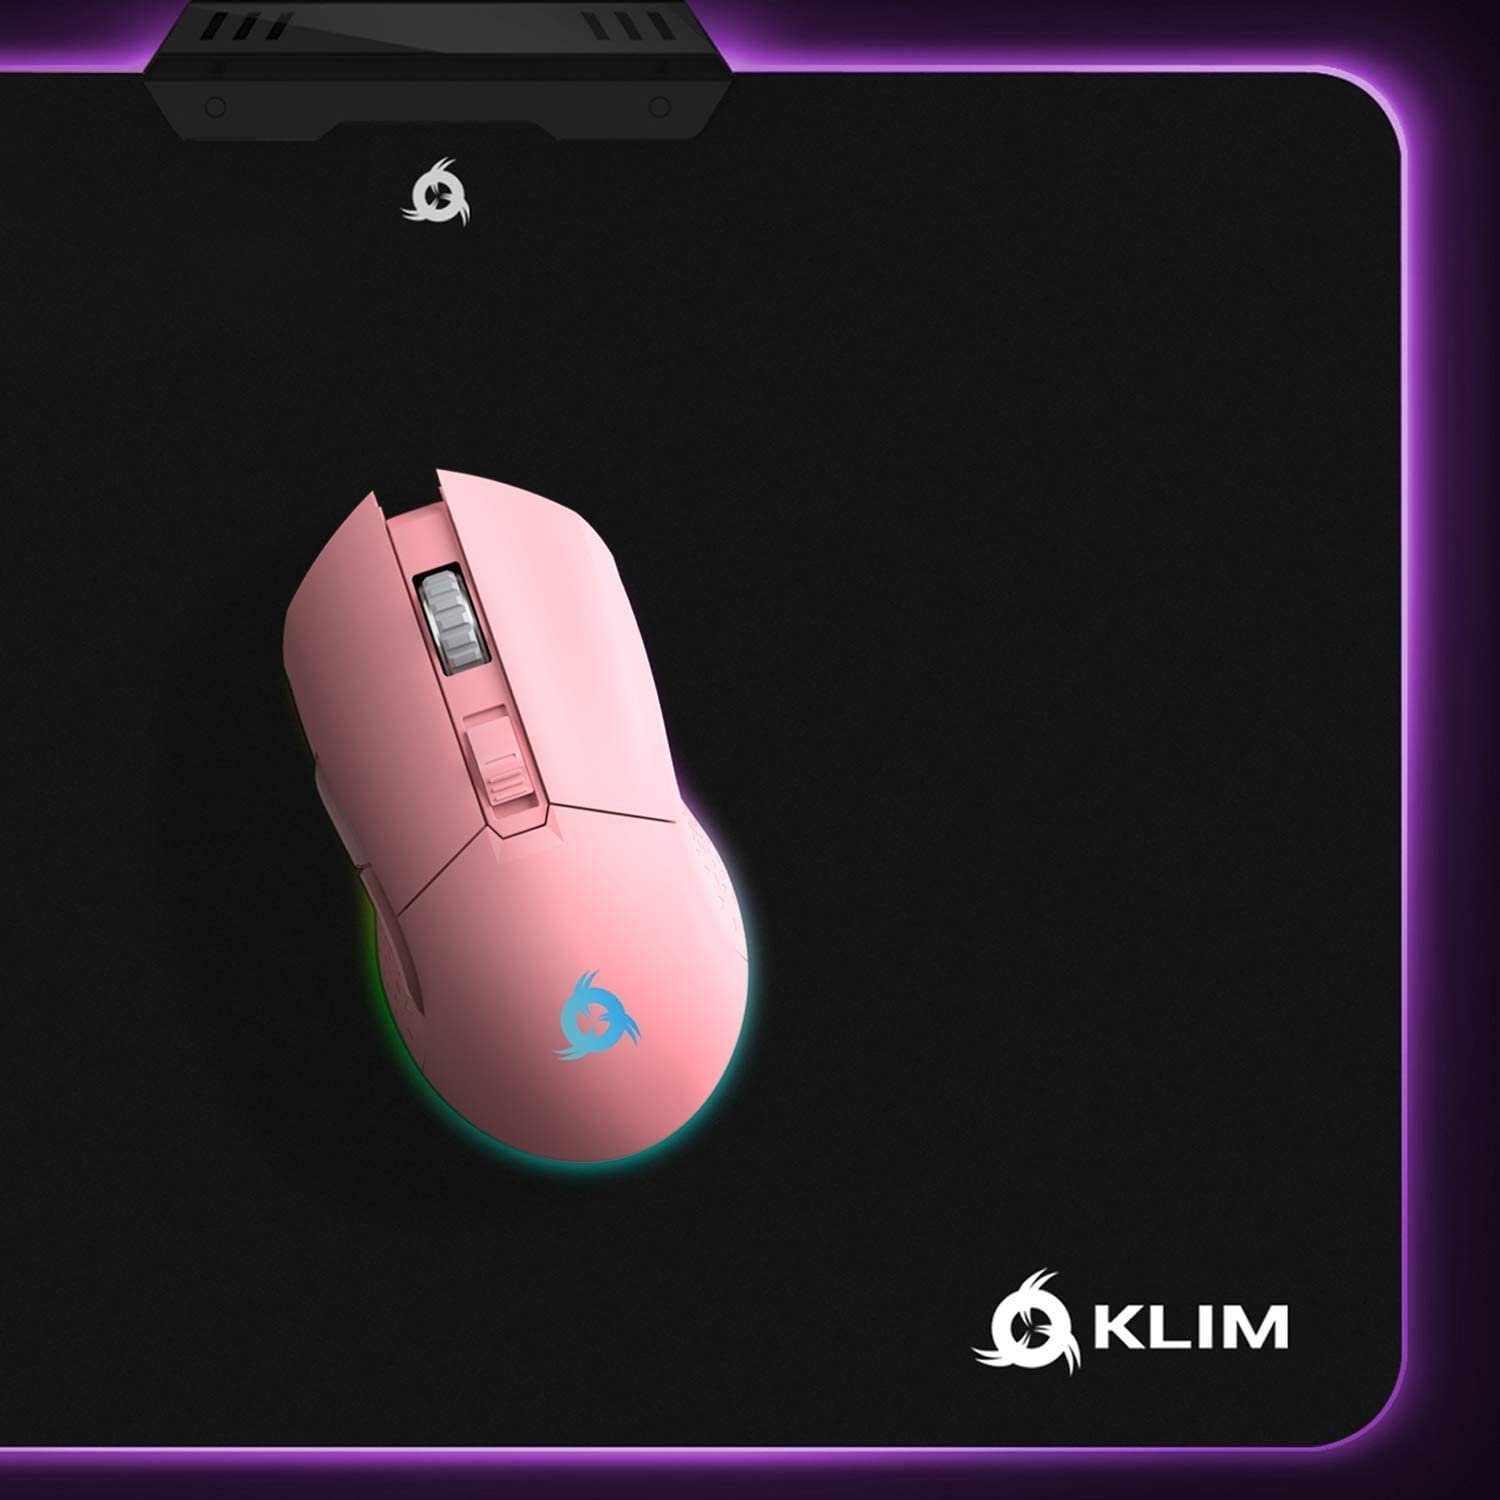 Blaze Hände,  mit Black Pink wiederaufladbar) ergonomisch (Funk, DPI-Anpassung für Gaming-Maus, KLIM wireless beide hochleistungs Gaming-Maus